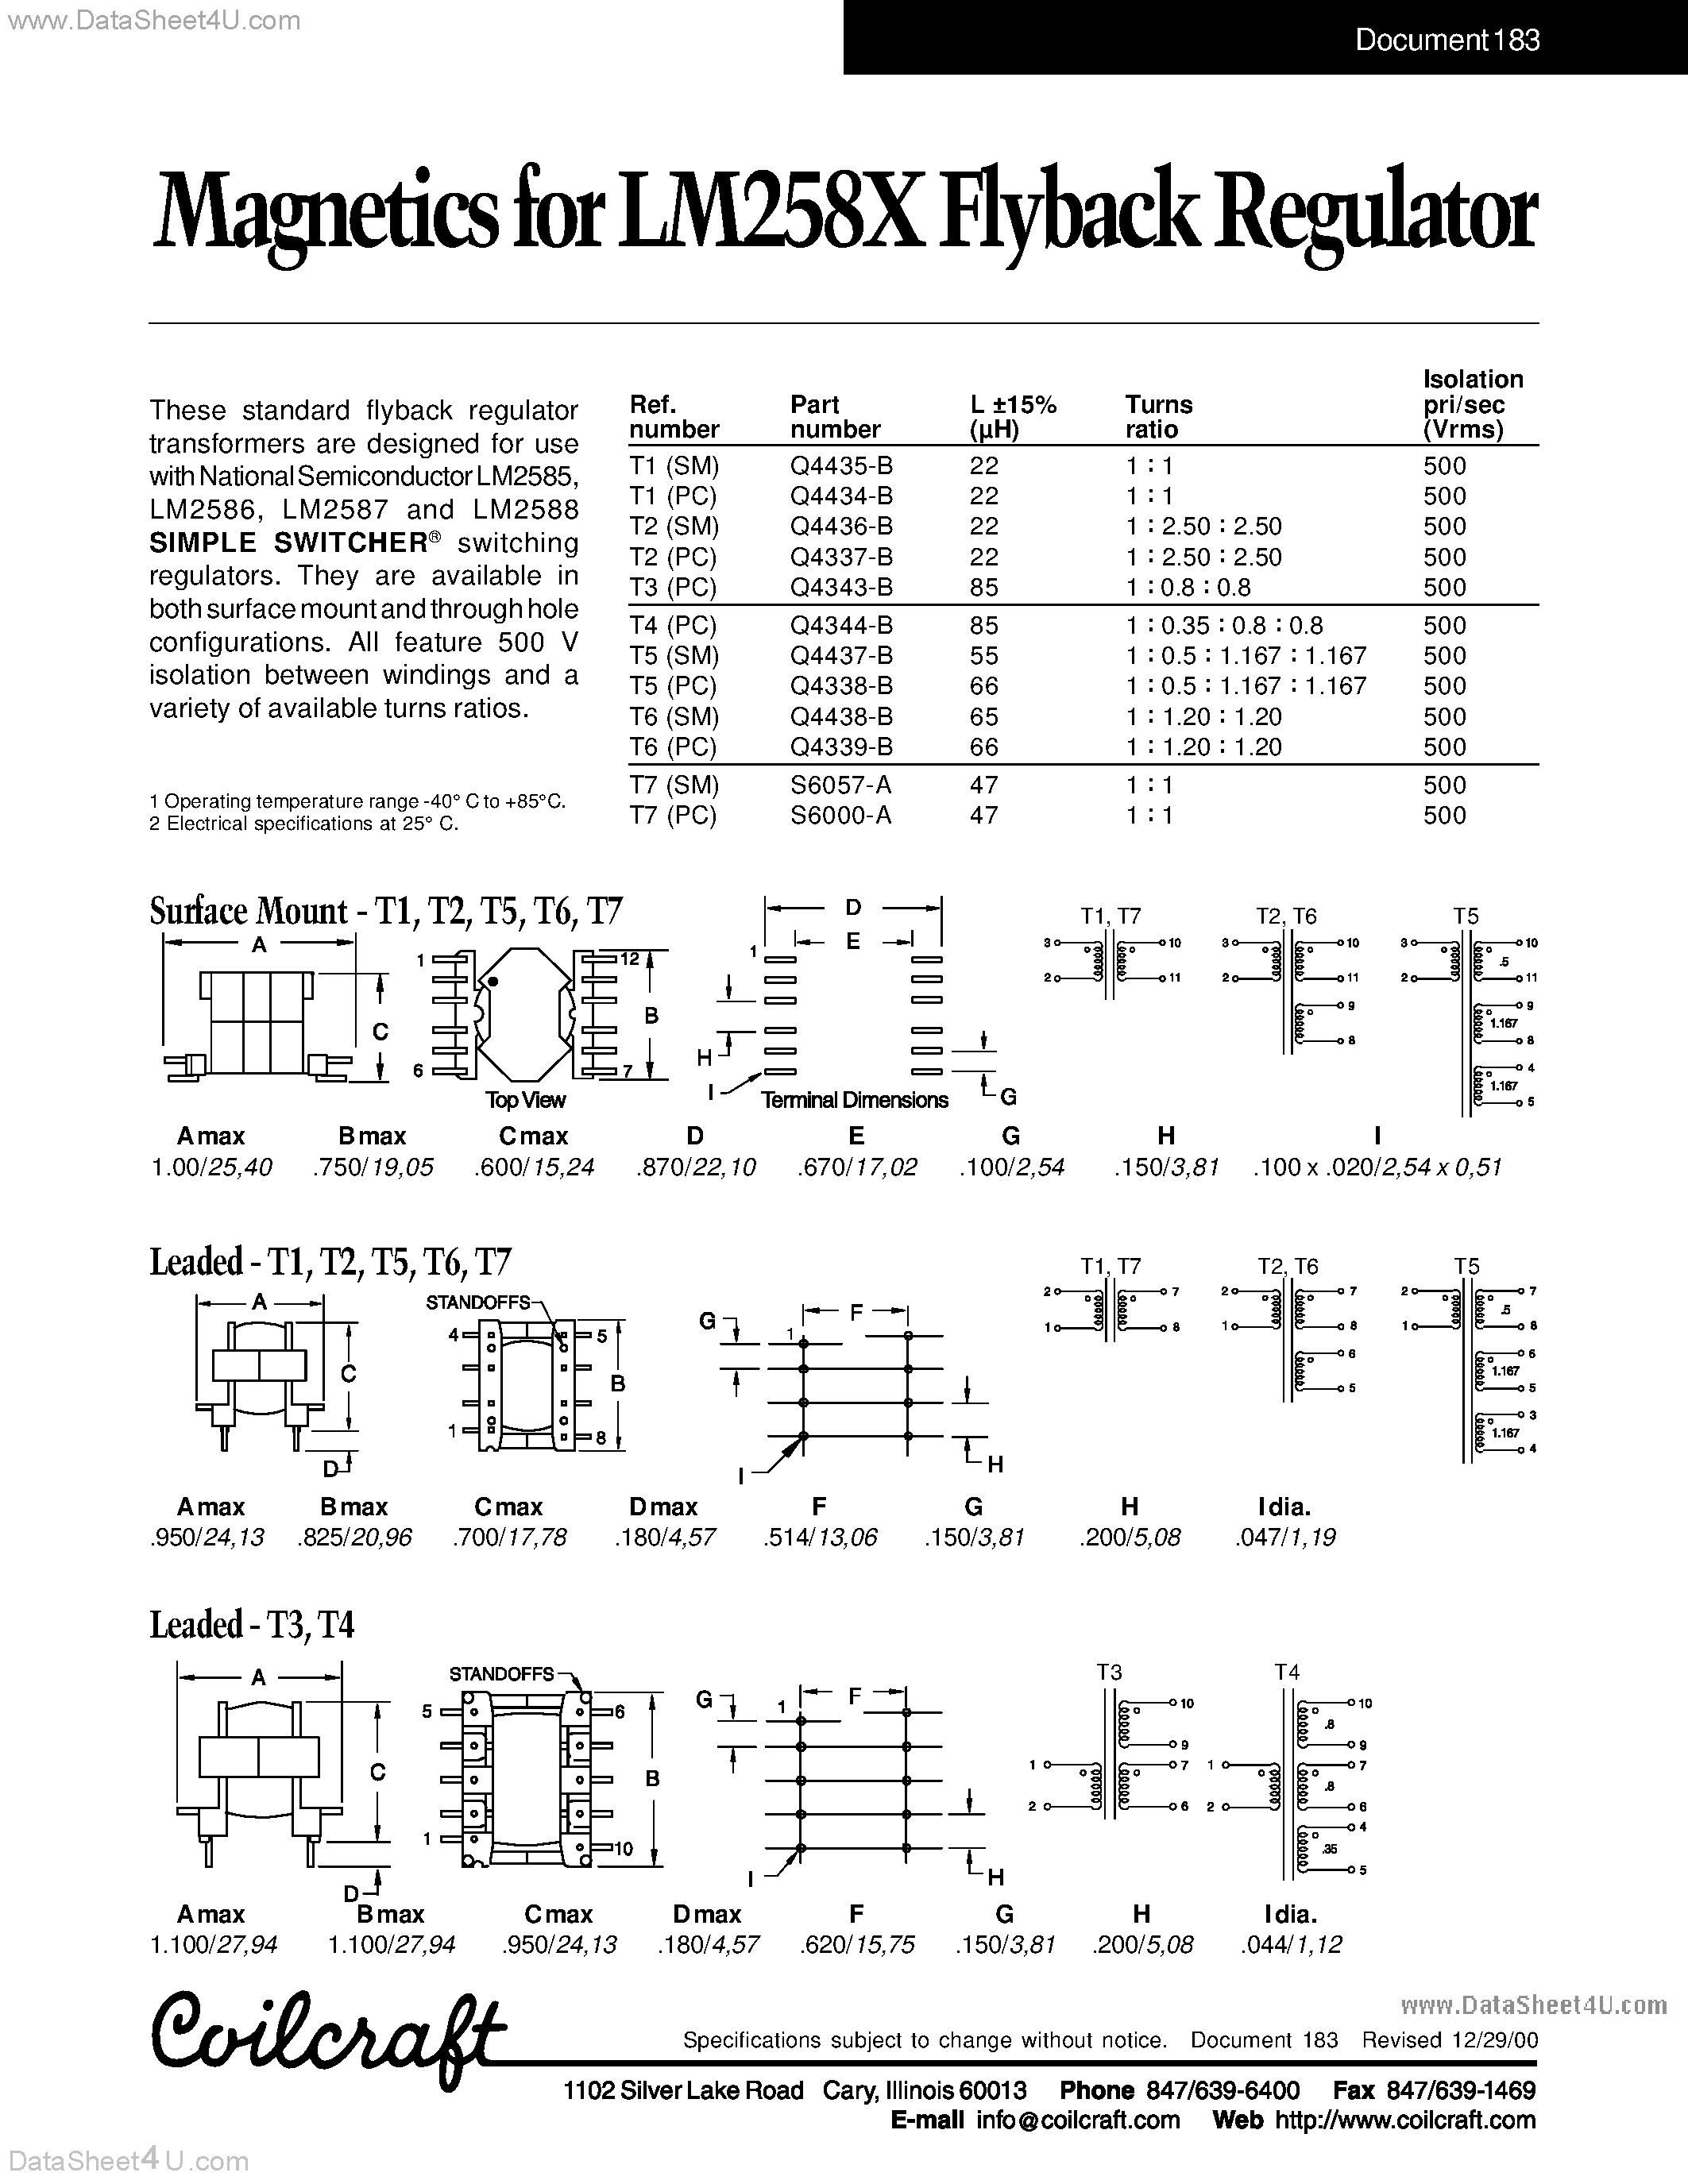 Даташит Q4337-B - (Q43xx4-B) Transformer страница 1